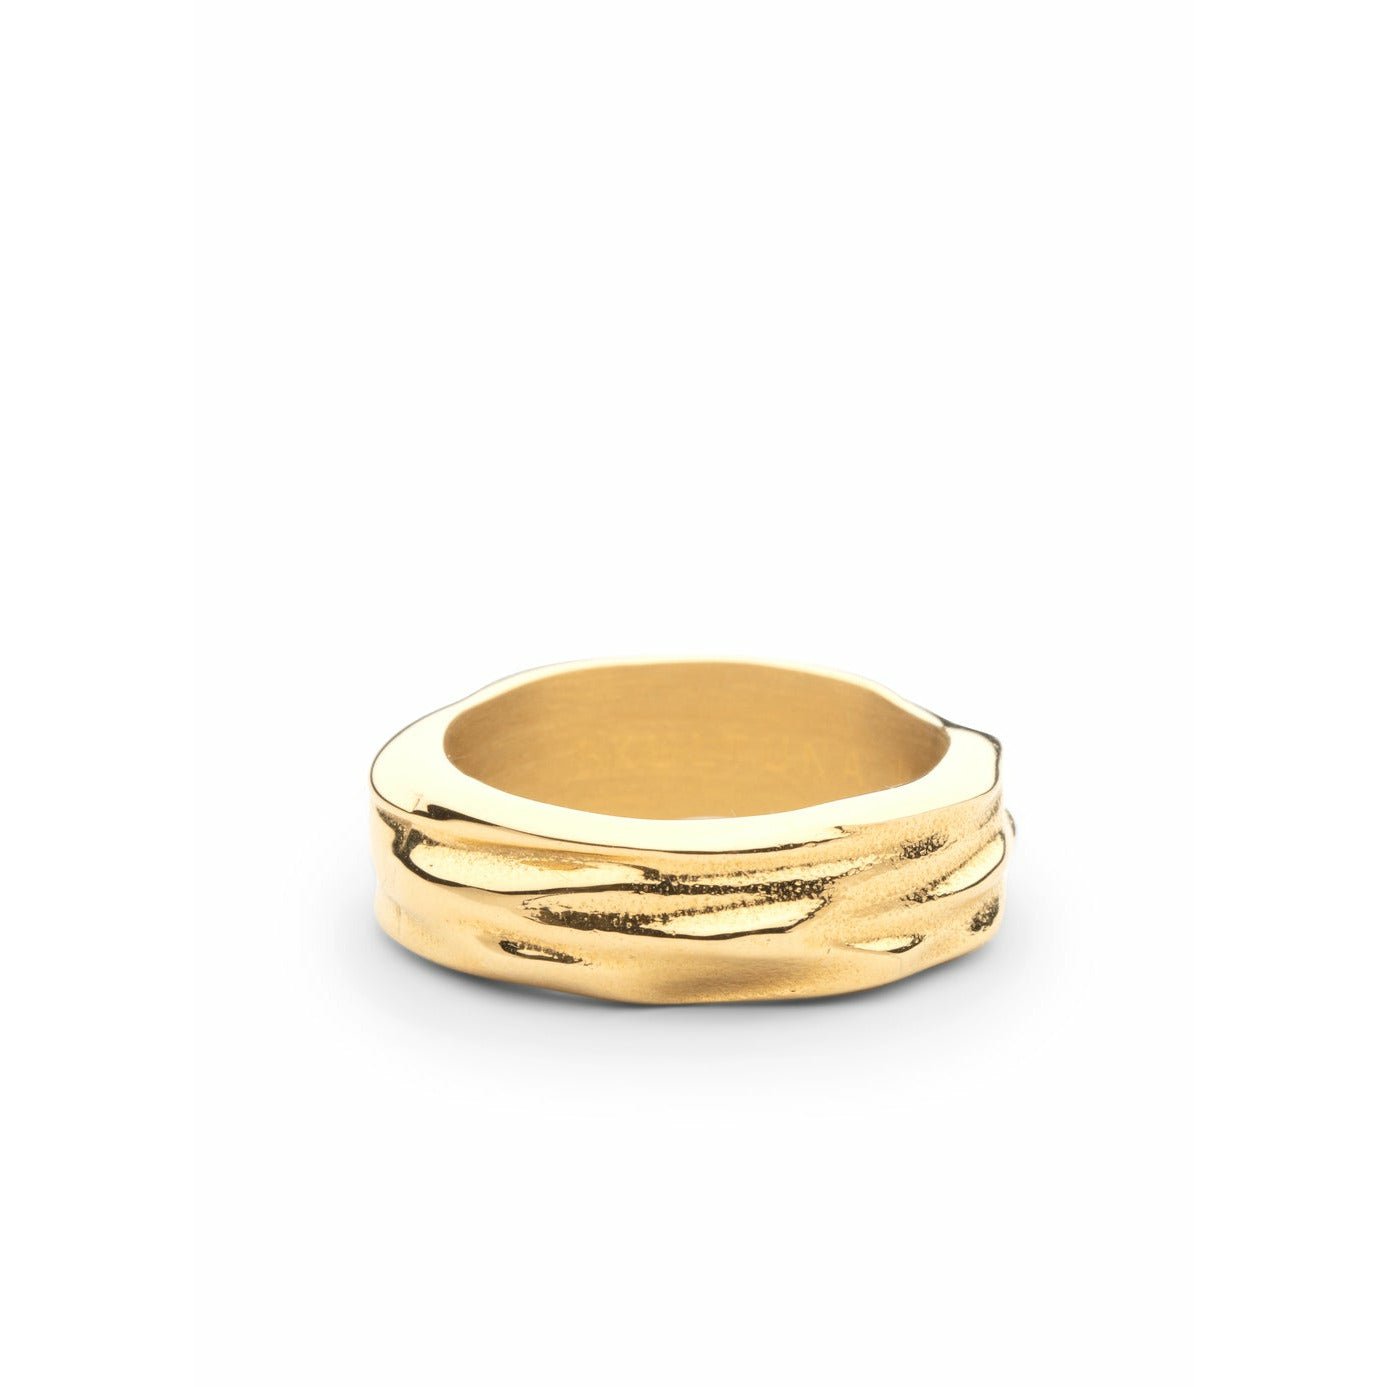 Skultuna Obiekty Obiekty Gruby Pierścień Mały matowy złoto, Ø1,6 cm